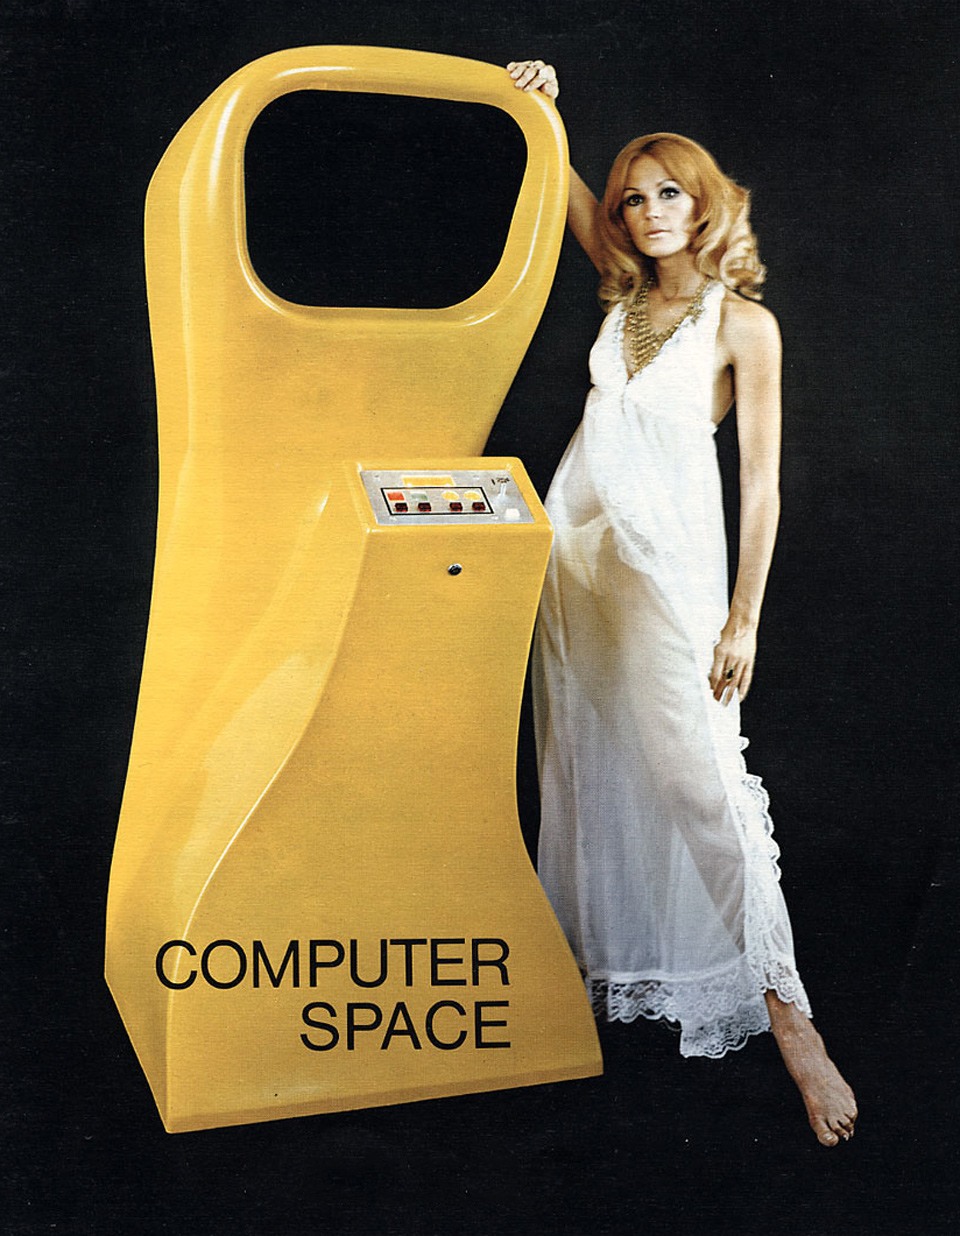 لعبة (كومبيوتر سبيس) من سنة 1971